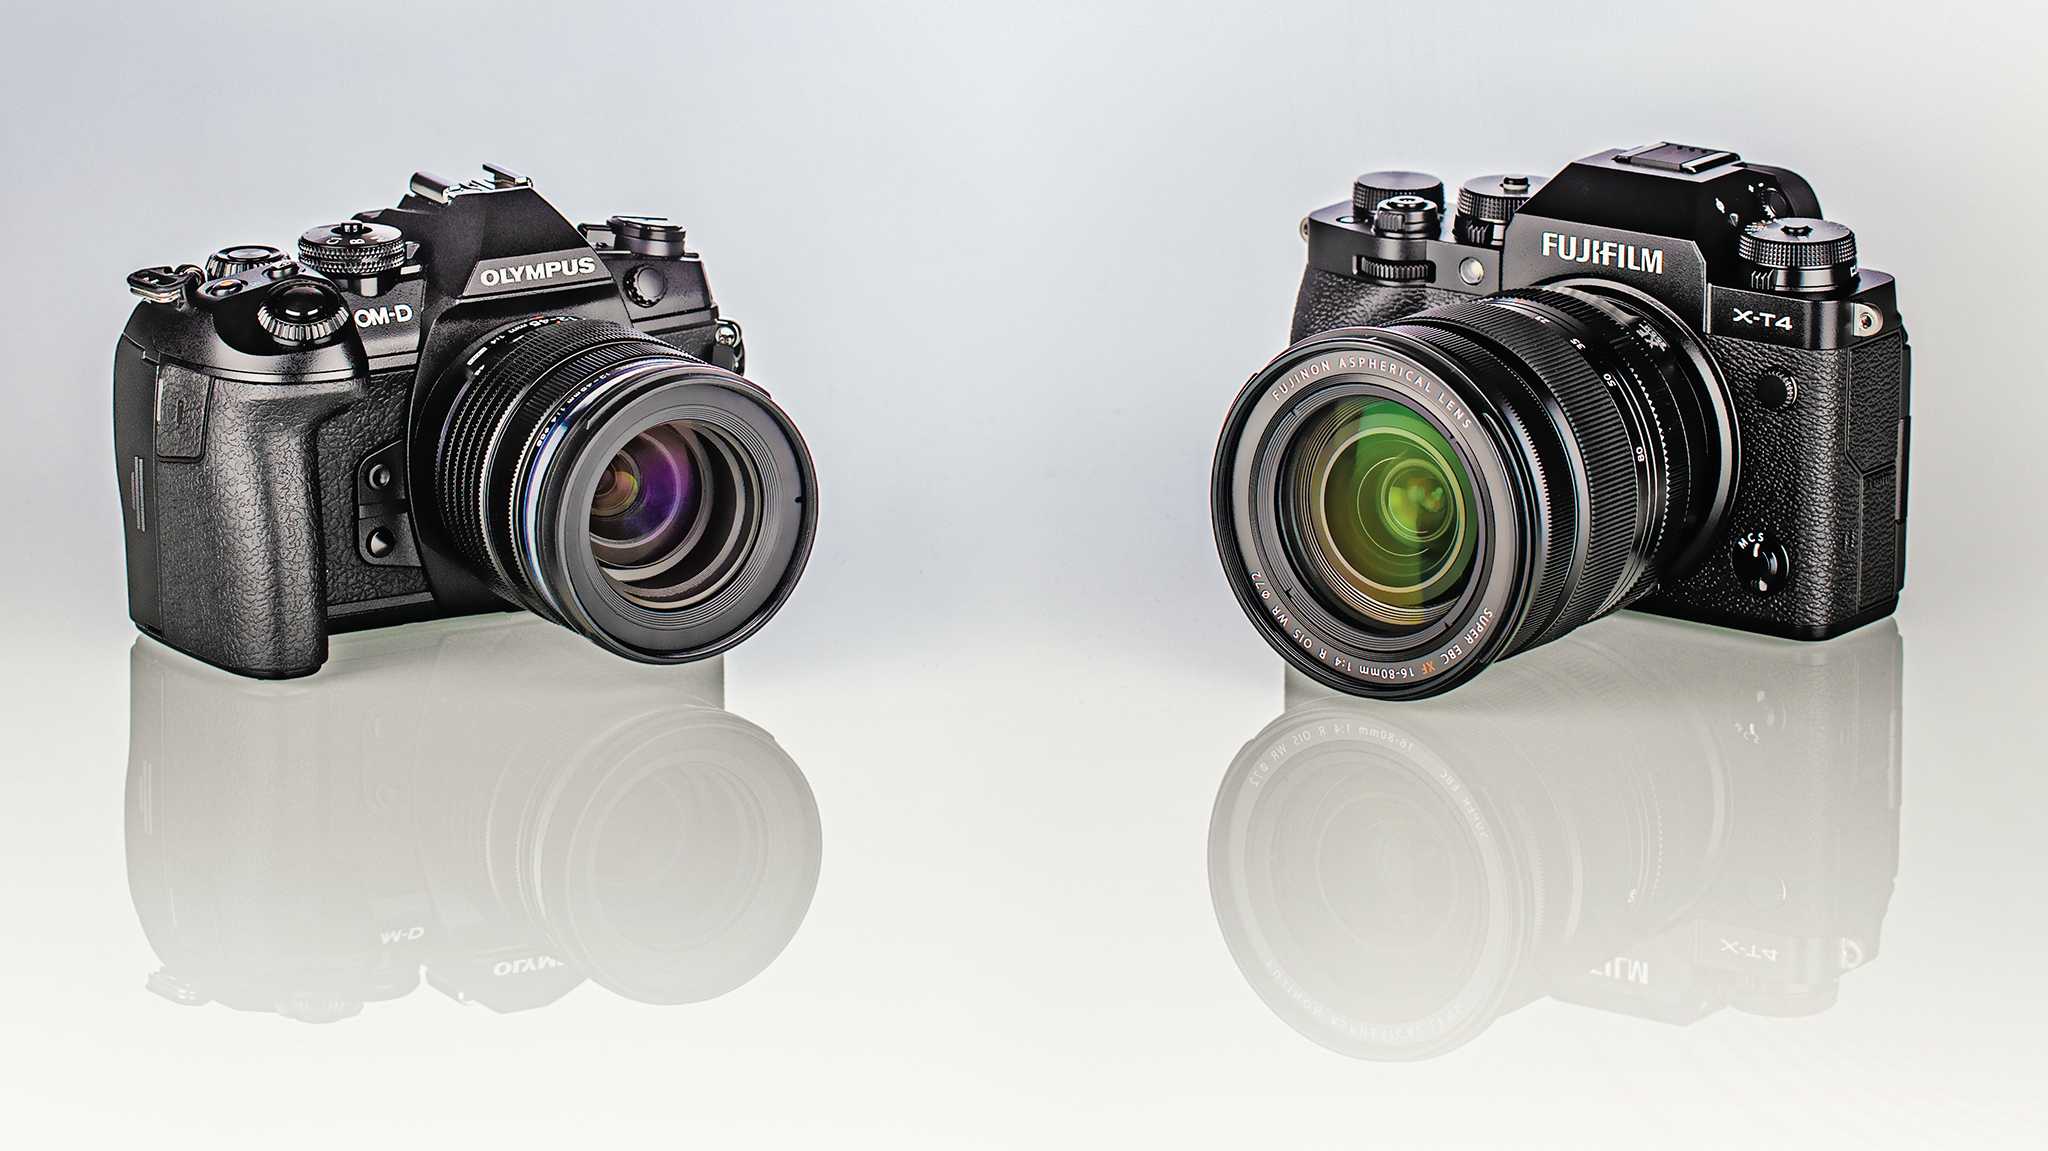 Schnelle spiegellose Systemkameras: Fujifilm X-T4 gegen Olympus OM-D E-M1 III